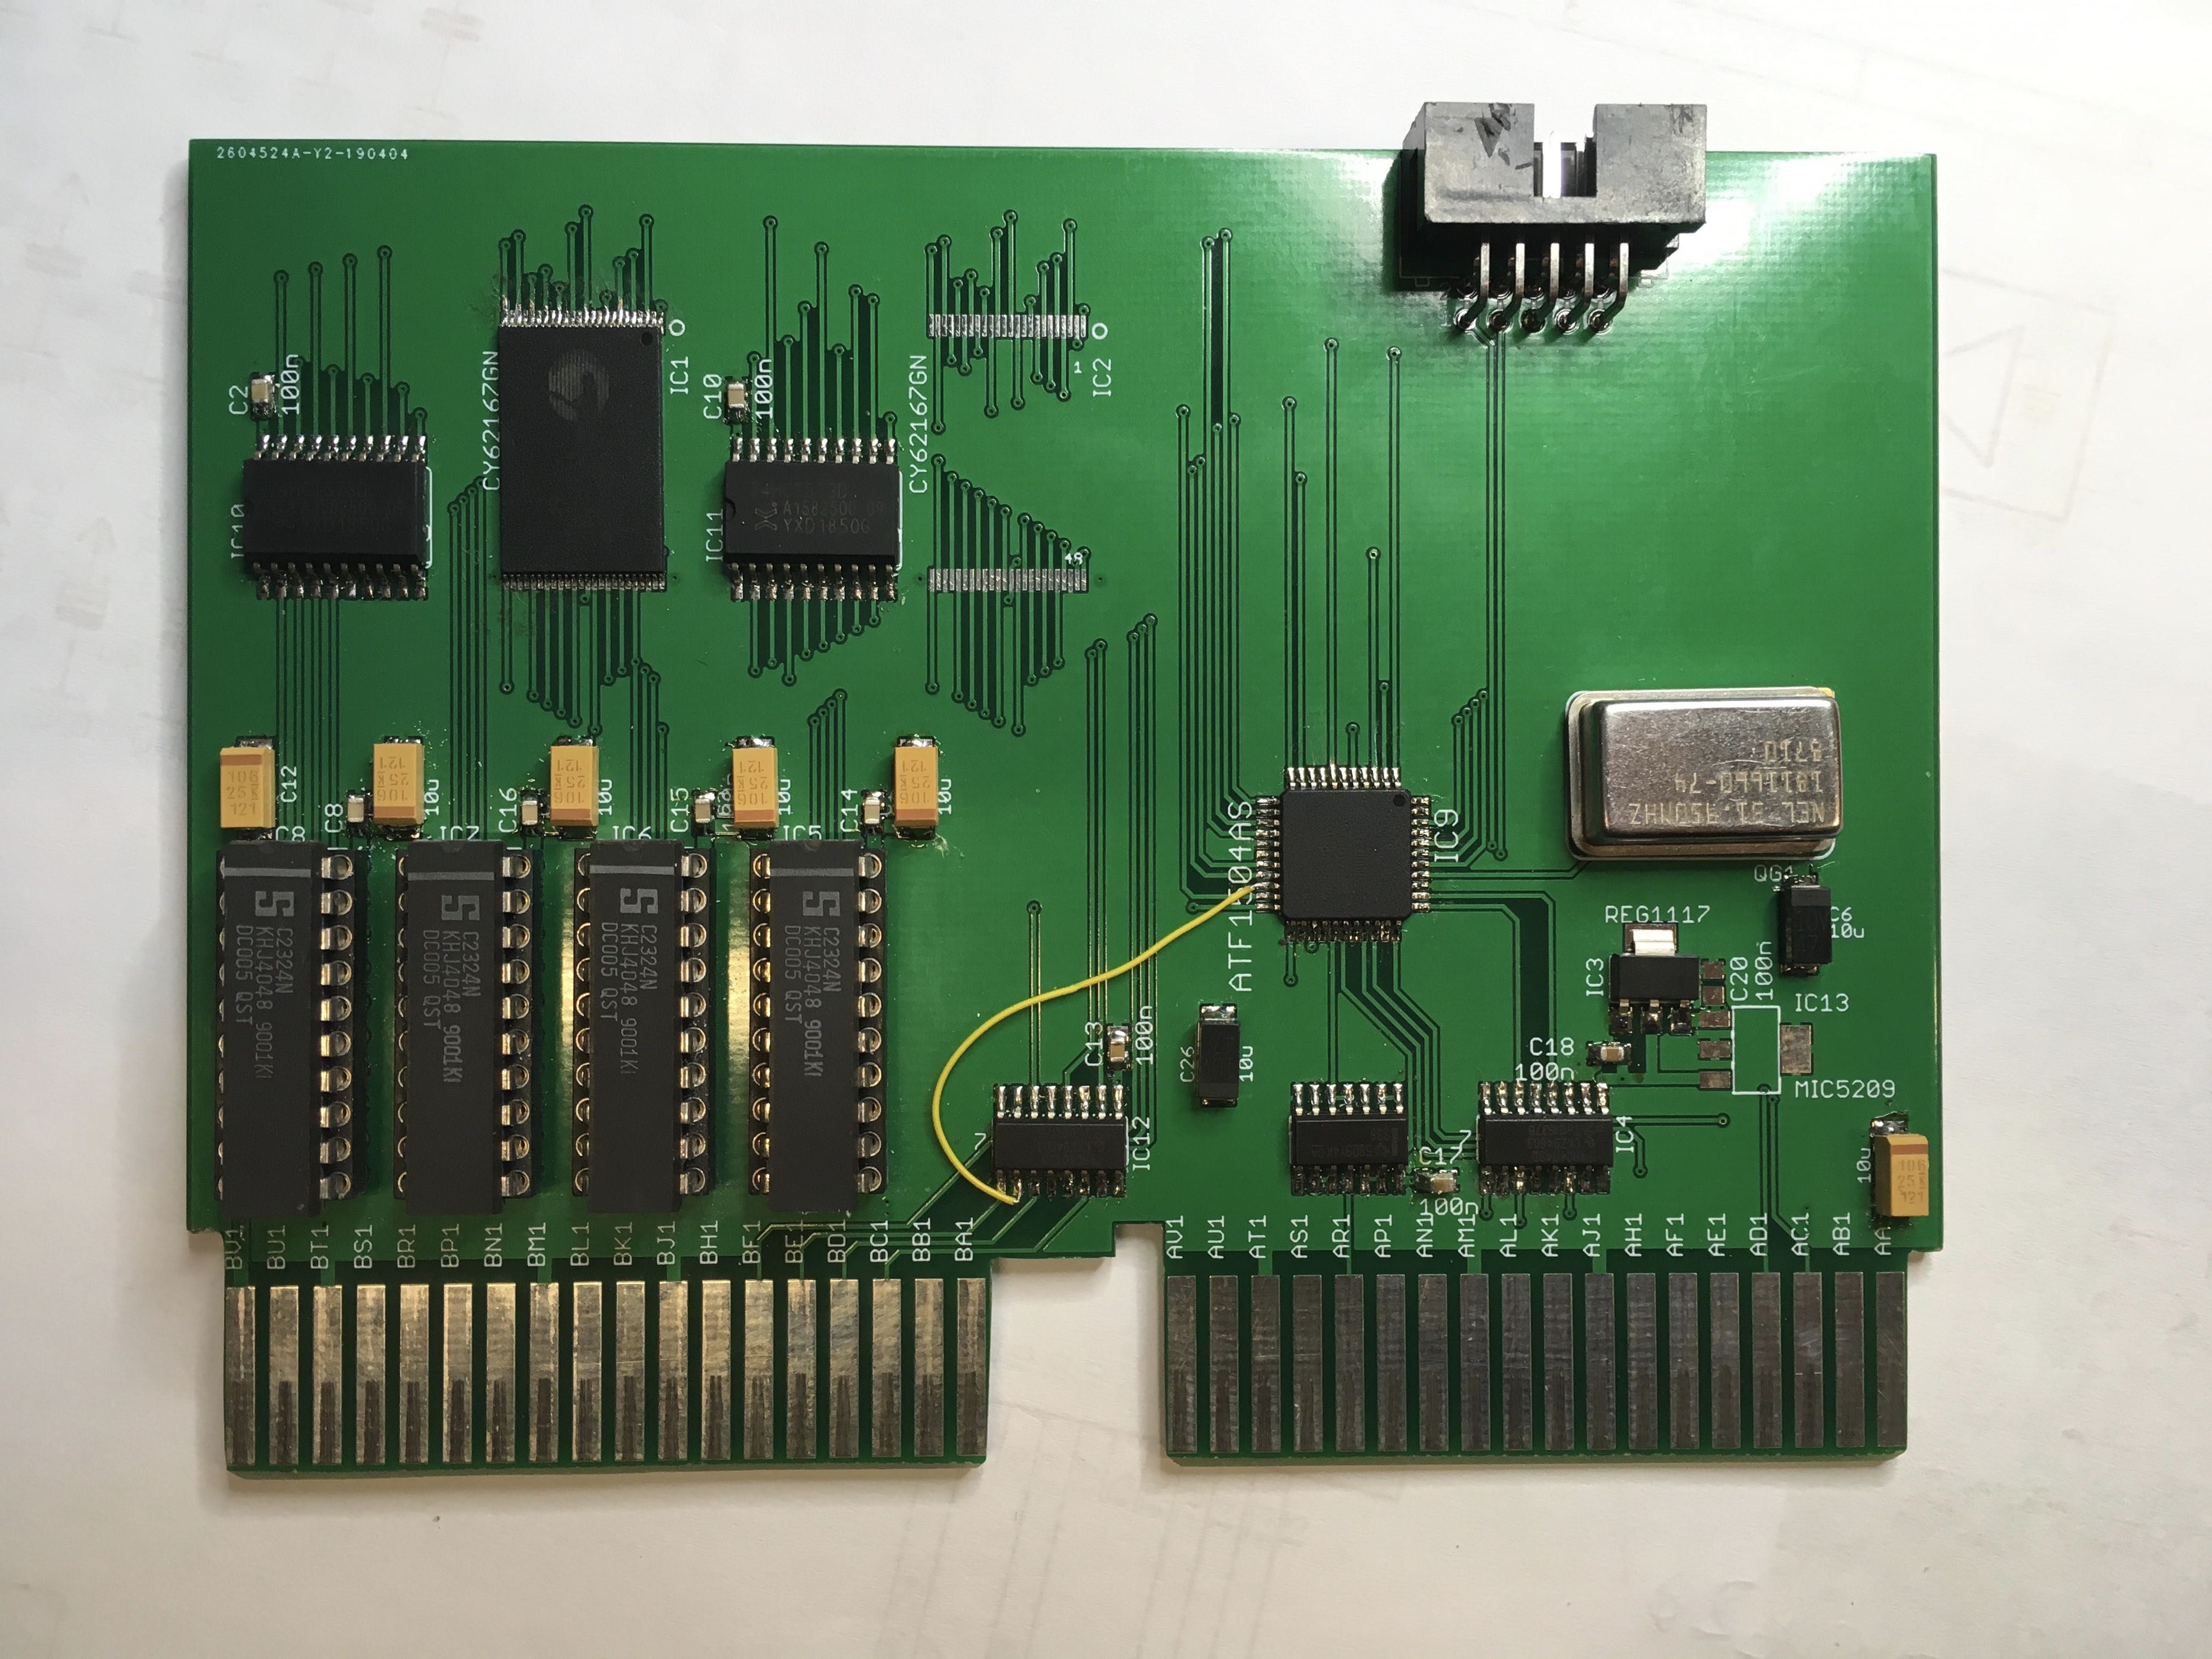 Prototype Q-Bus PDP-11 Memory